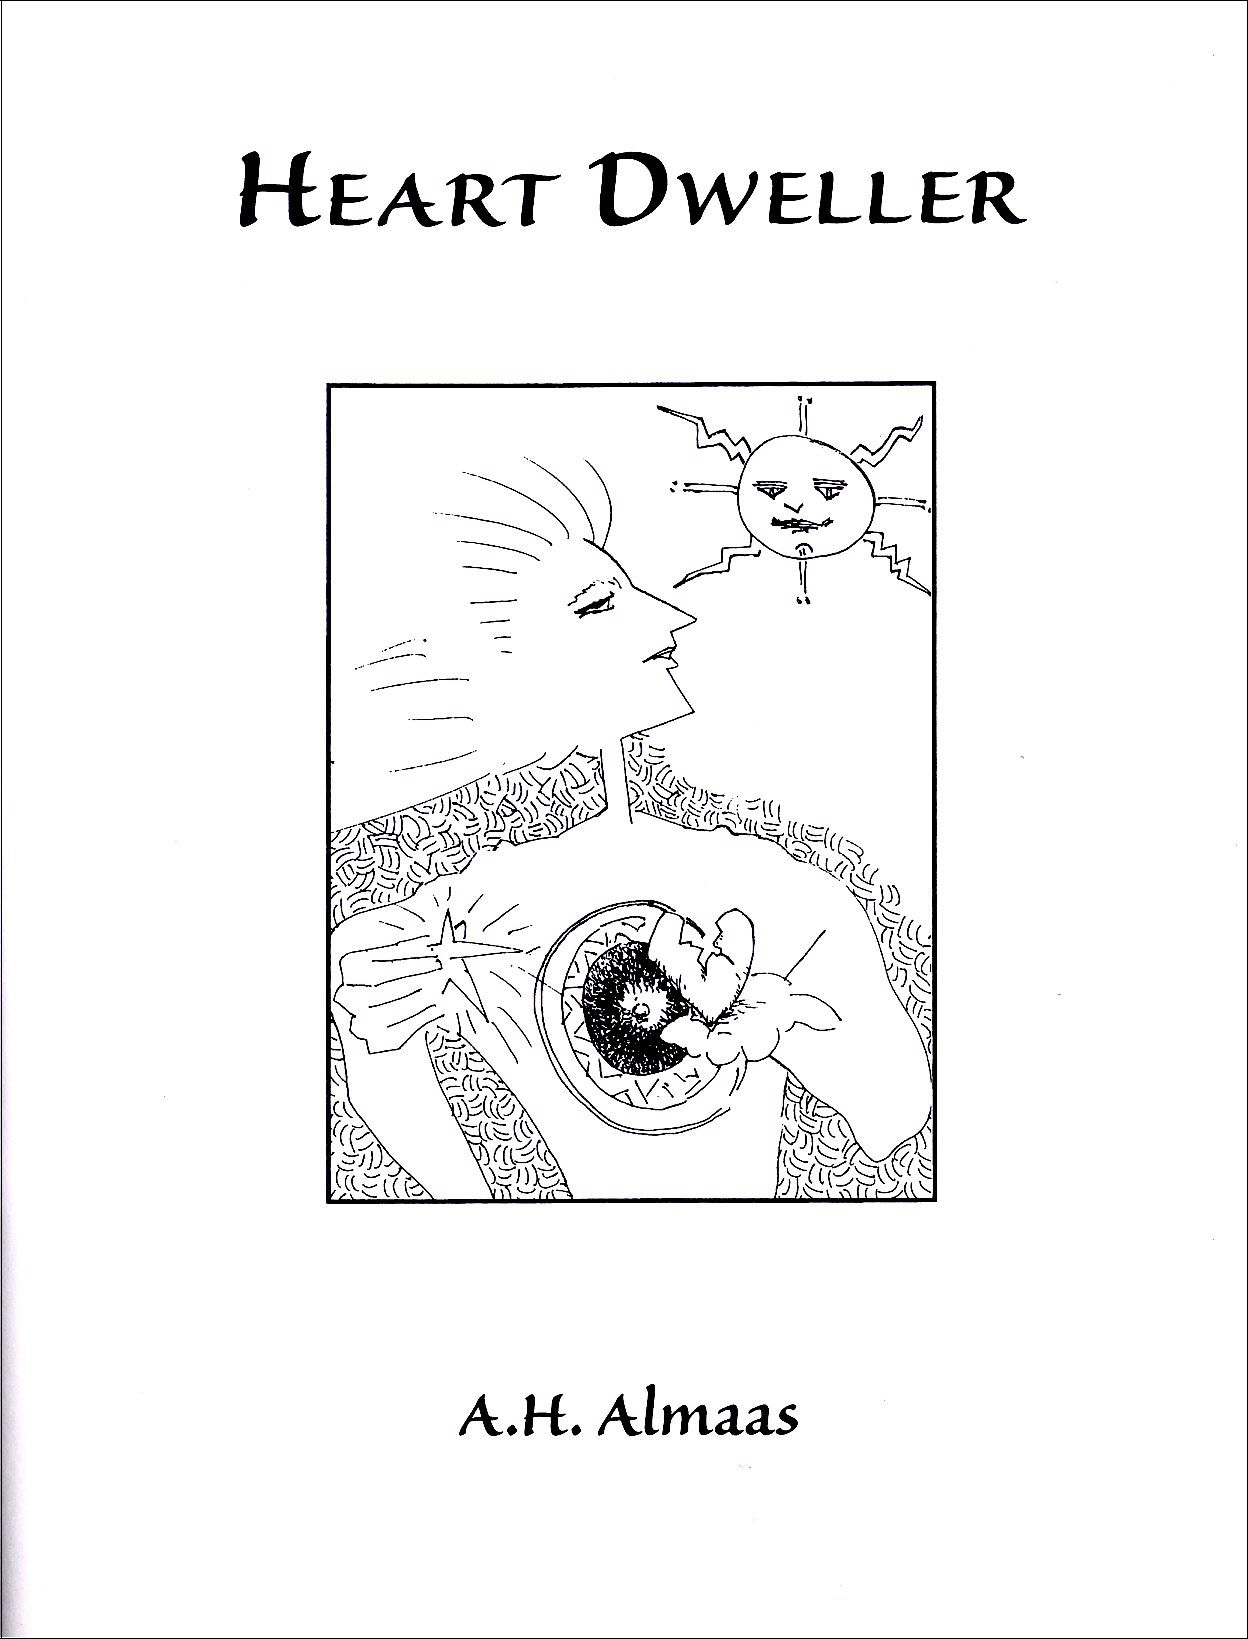 Heart Dweller